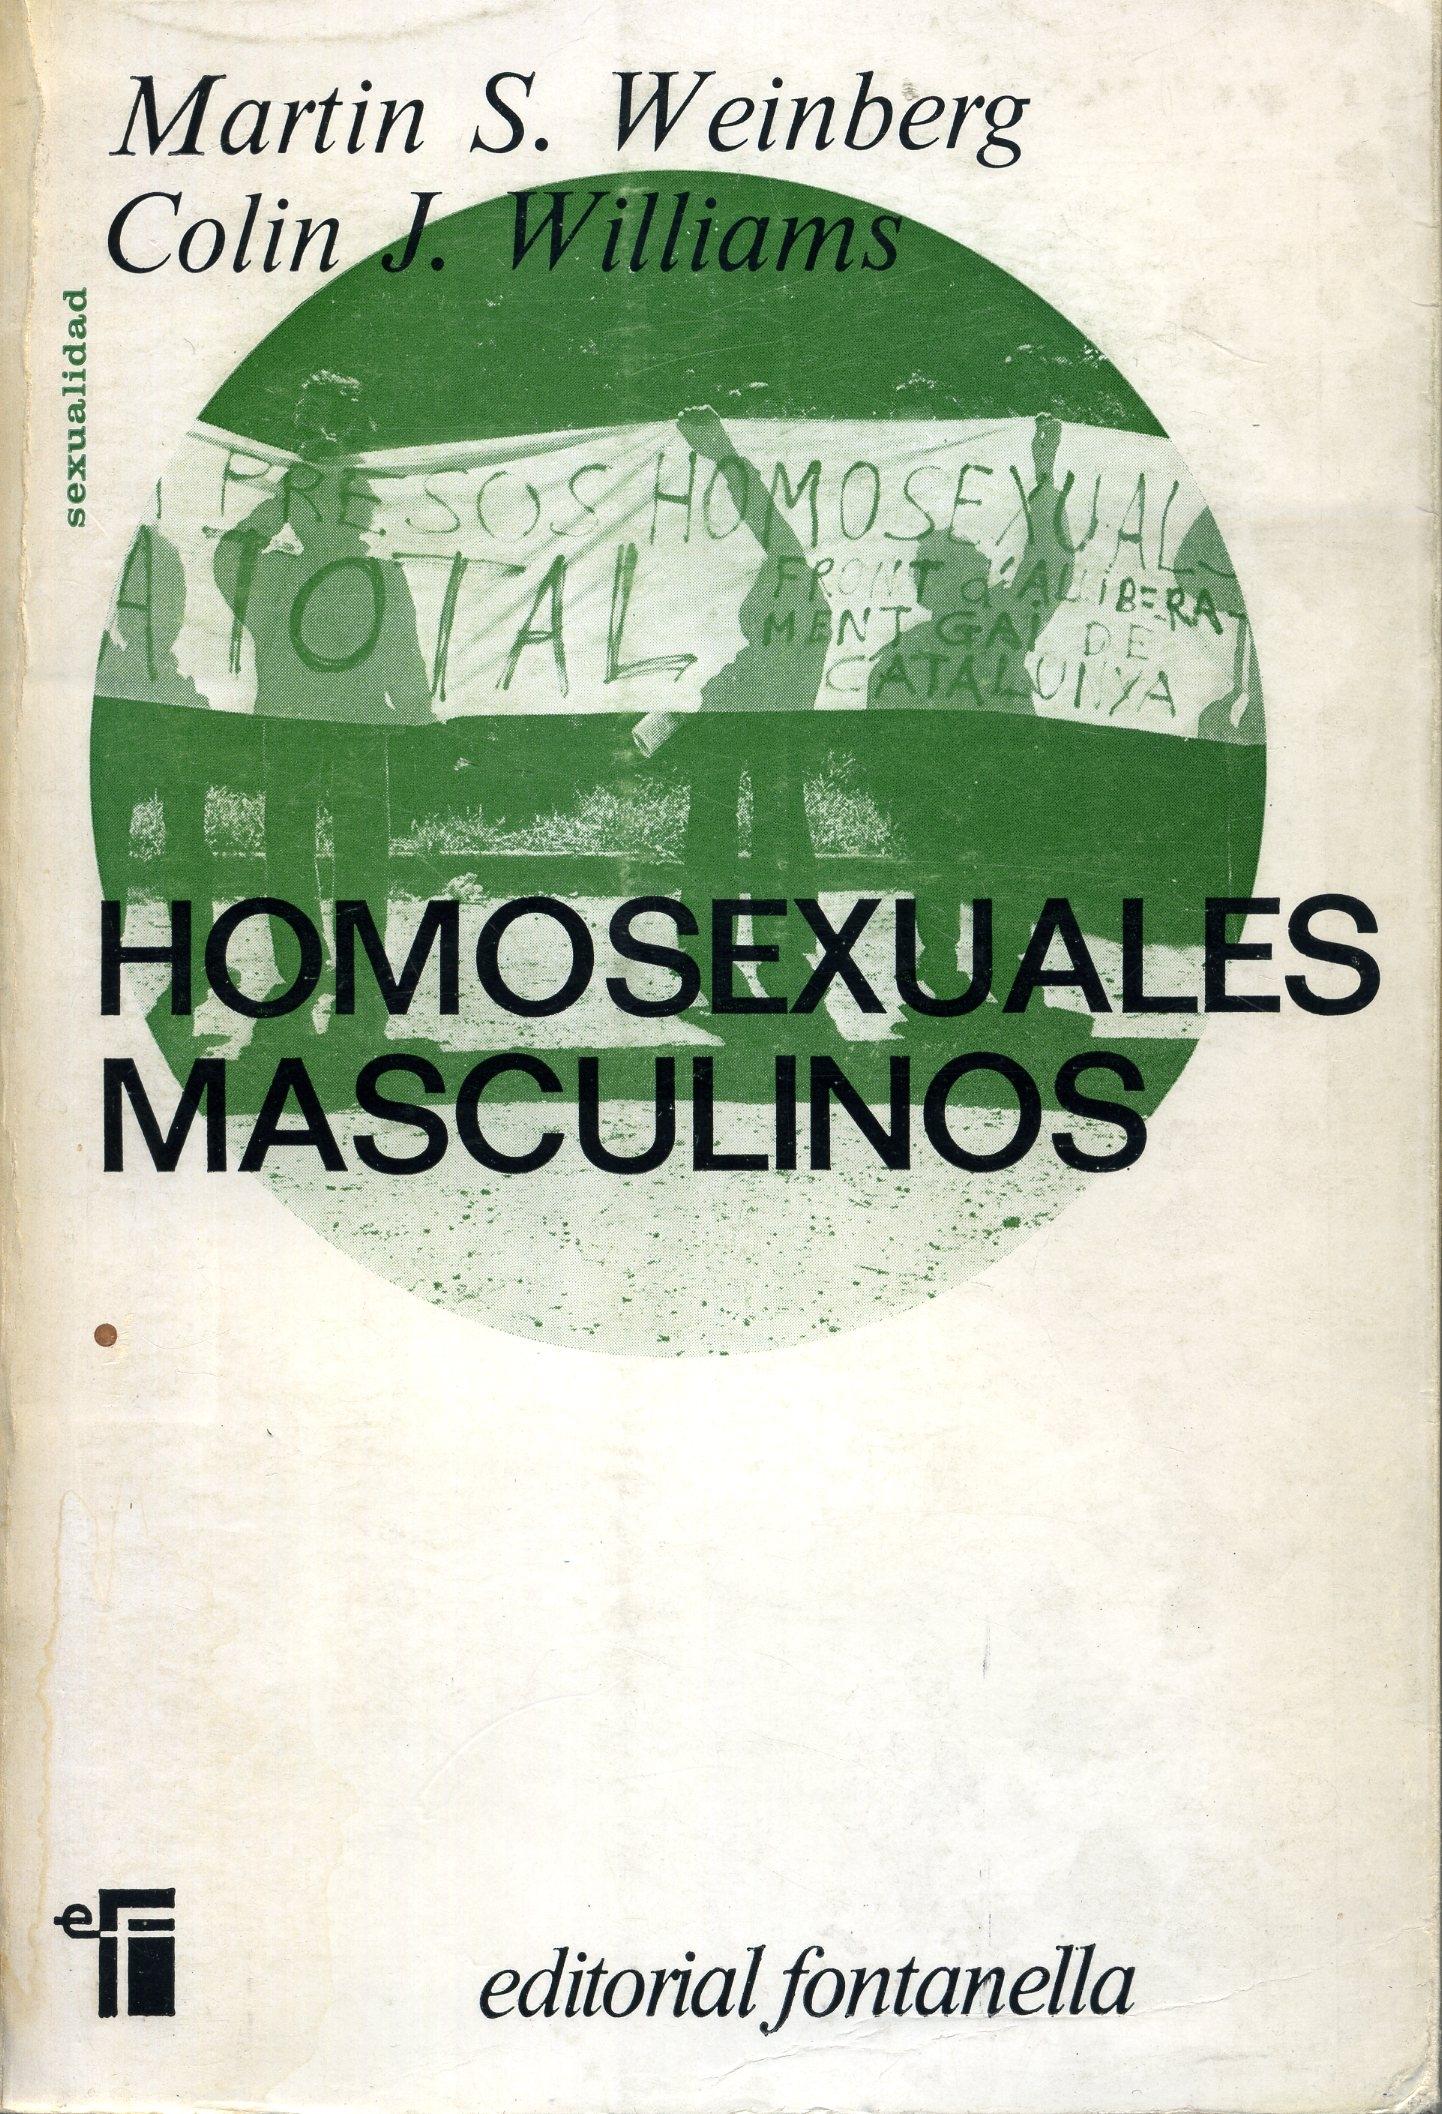 Homosexuales masculinos "Sus problemas y adaptación". 